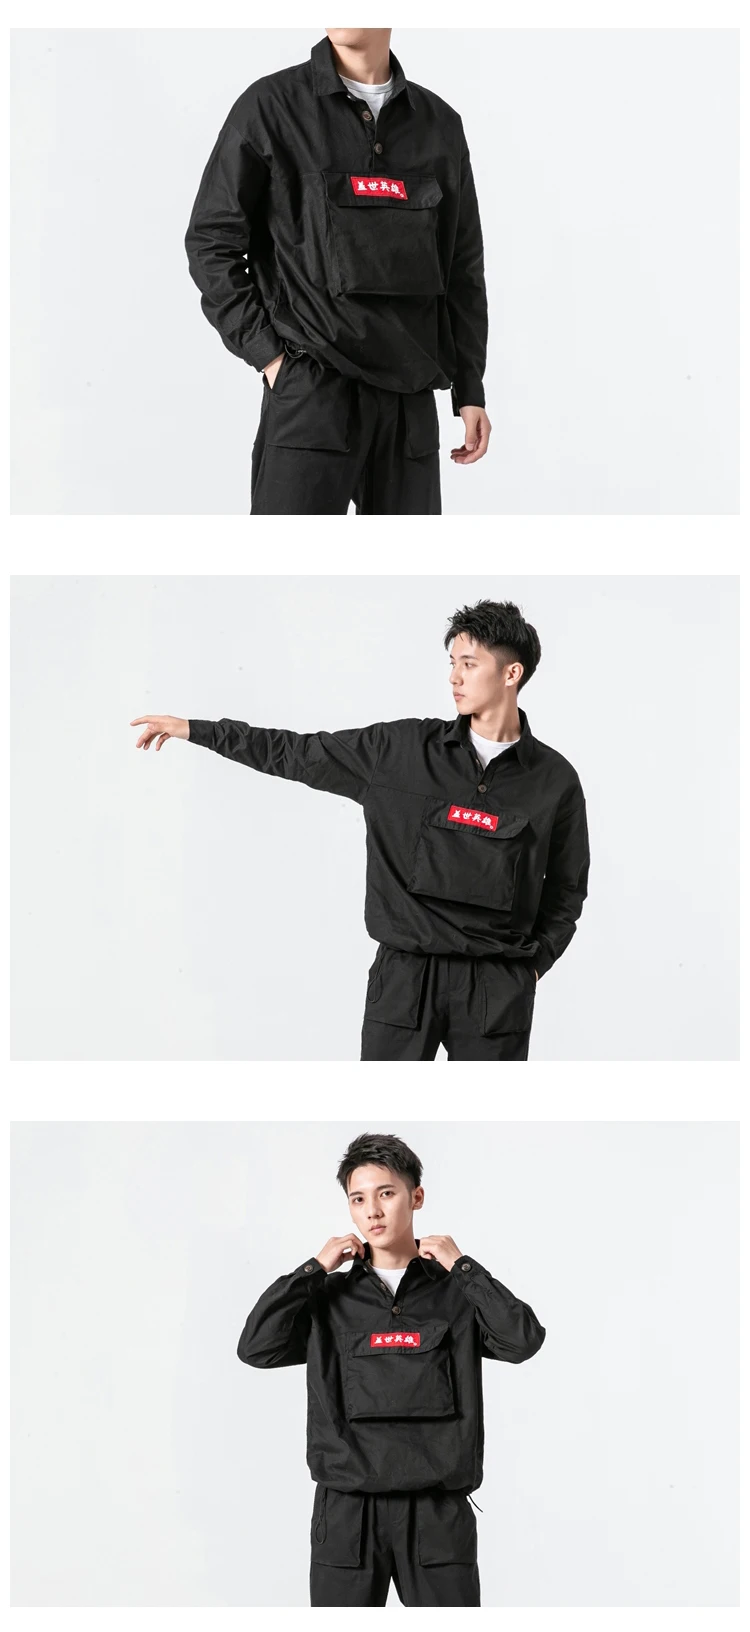 Sinicism магазине для мужчин Вышивка Haraujuku рубашка пуловер 2019 человек черный рубашки в уличном стиле хип хоп одежда Дизайнер Высокое качество INS